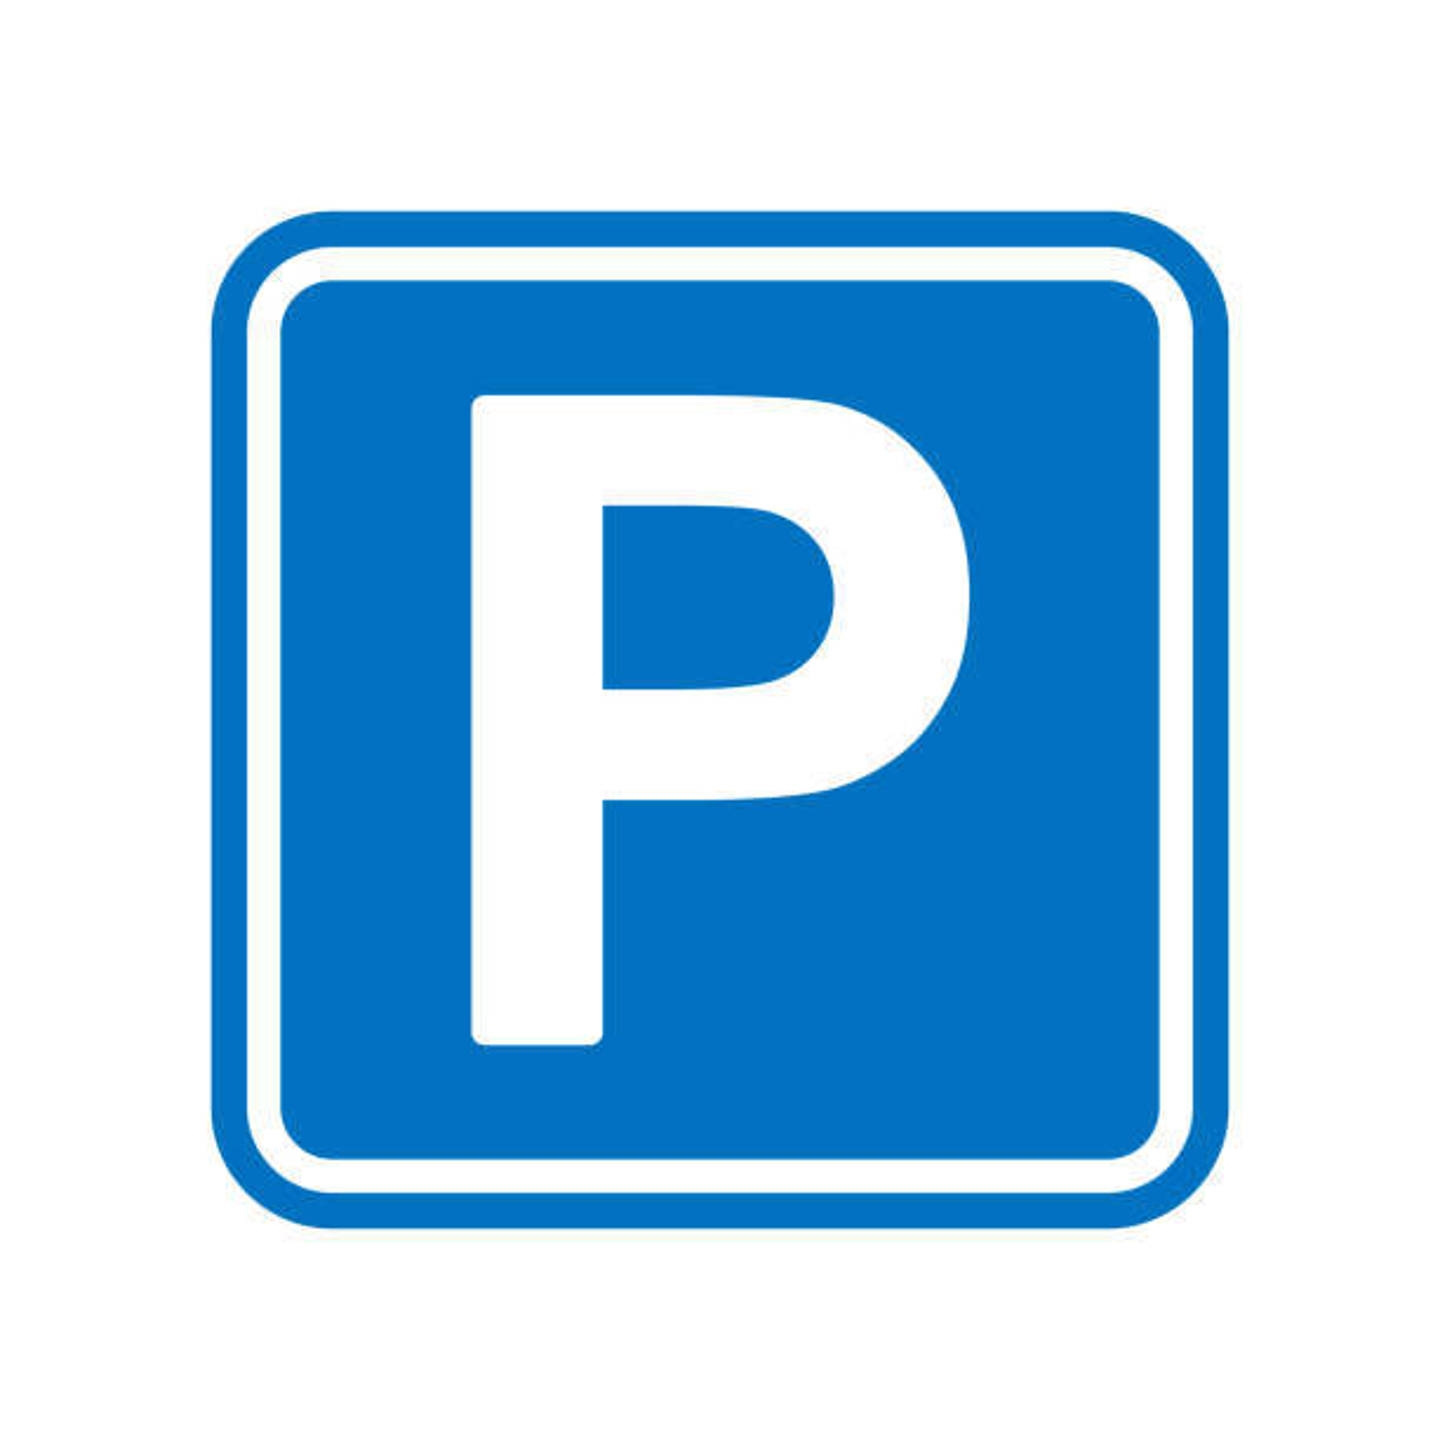 Parking à vendre à Molenbeek-Saint-Jean 1080 15450.00€  chambres 12.50m² - annonce 1324762